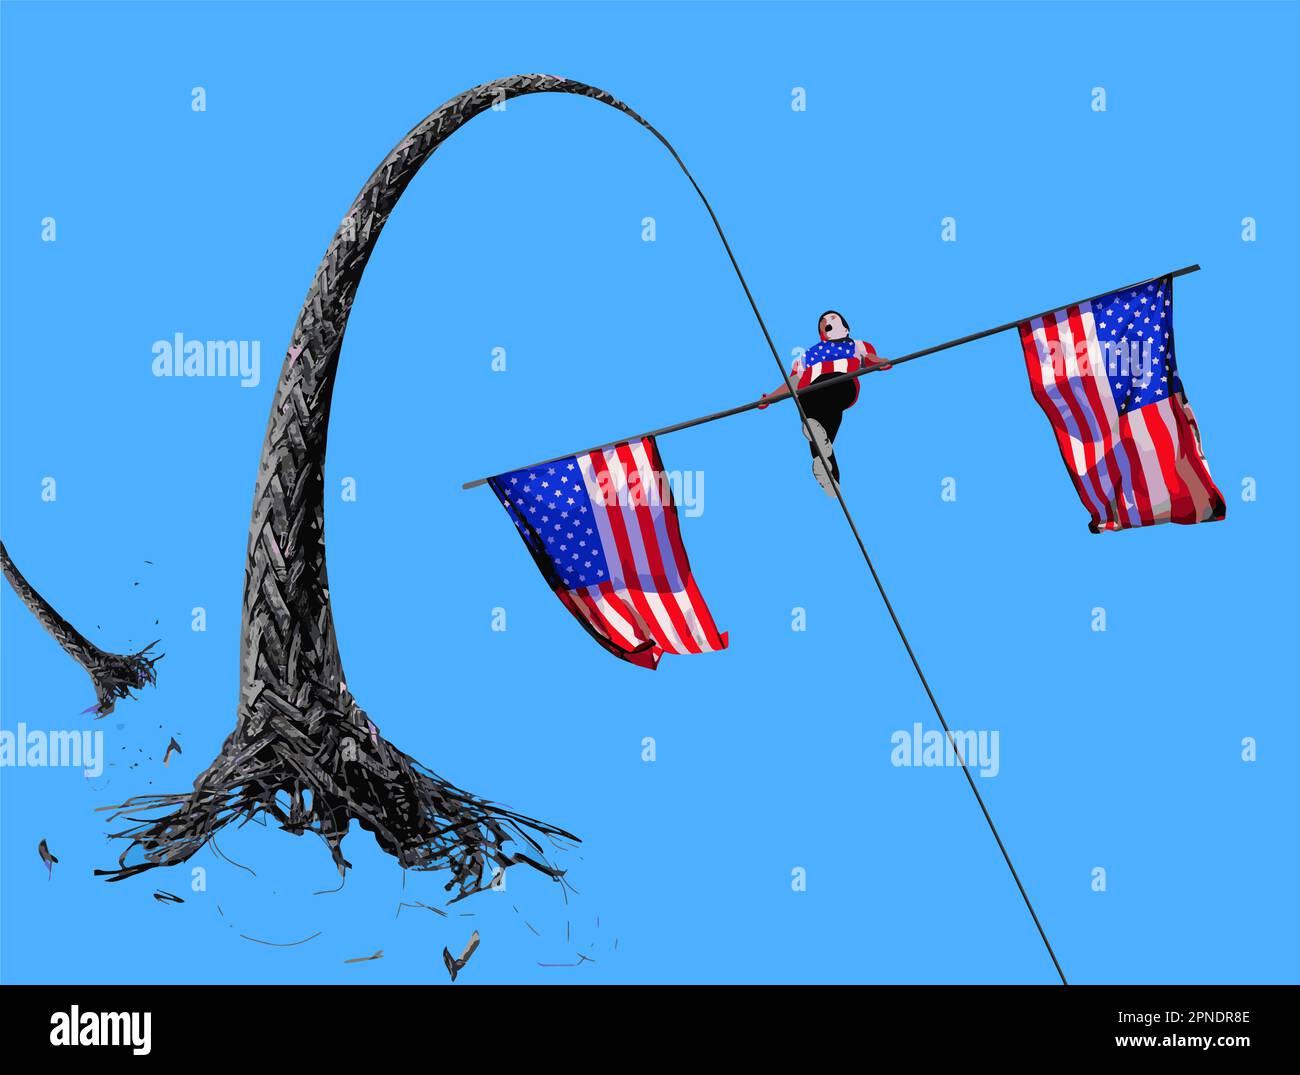 Una corda stretta scatta facendo per un futuro difettoso per la bandiera americana che trasporta il camminatore alto del filo in una metafora circa la politica degli Stati Uniti. Questo è un vettore. Illustrazione Vettoriale